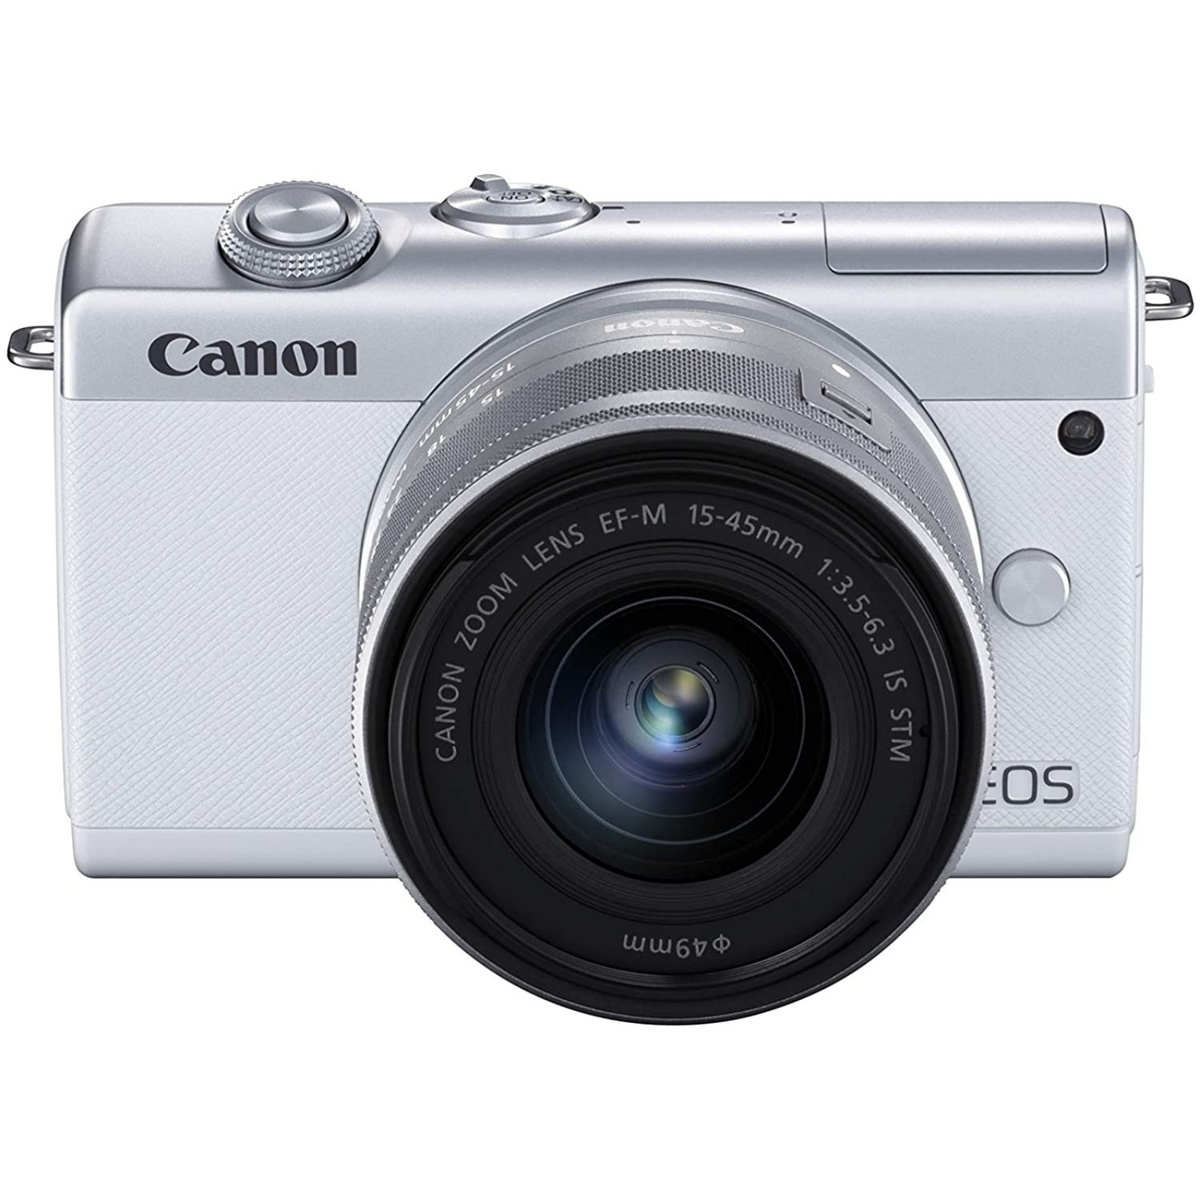 2021新春福袋】 Canon キヤノン ミラーレス一眼カメラ EOS M200 EF-M15-45 IS STM レンズキット ホワイト  3700C008 新品 somardistribuidora.com